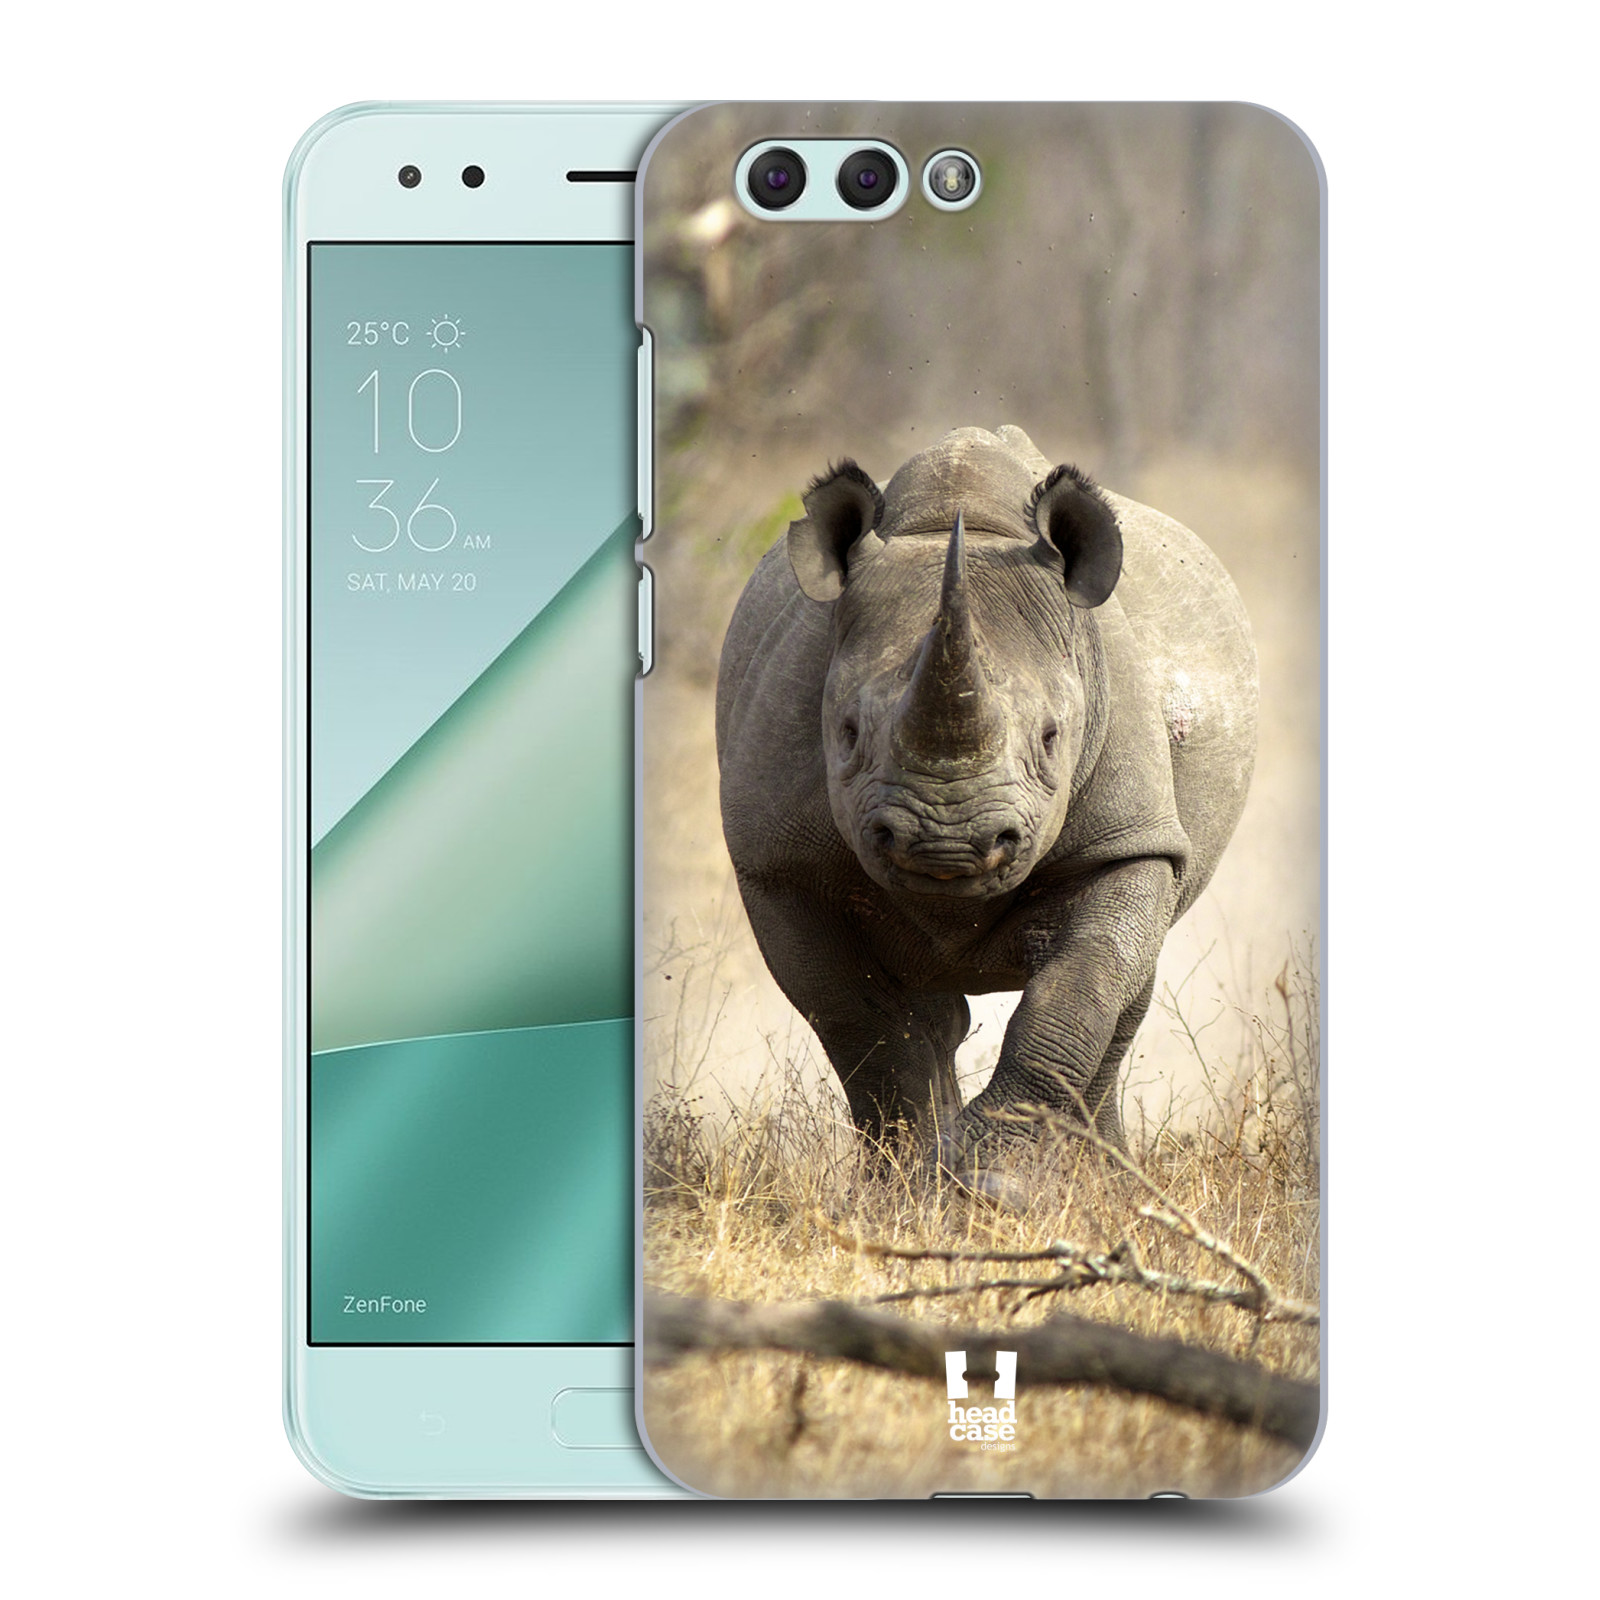 HEAD CASE plastový obal na mobil Asus Zenfone 4 ZE554KL vzor Divočina, Divoký život a zvířata foto AFRIKA BĚŽÍCÍ NOSOROŽEC